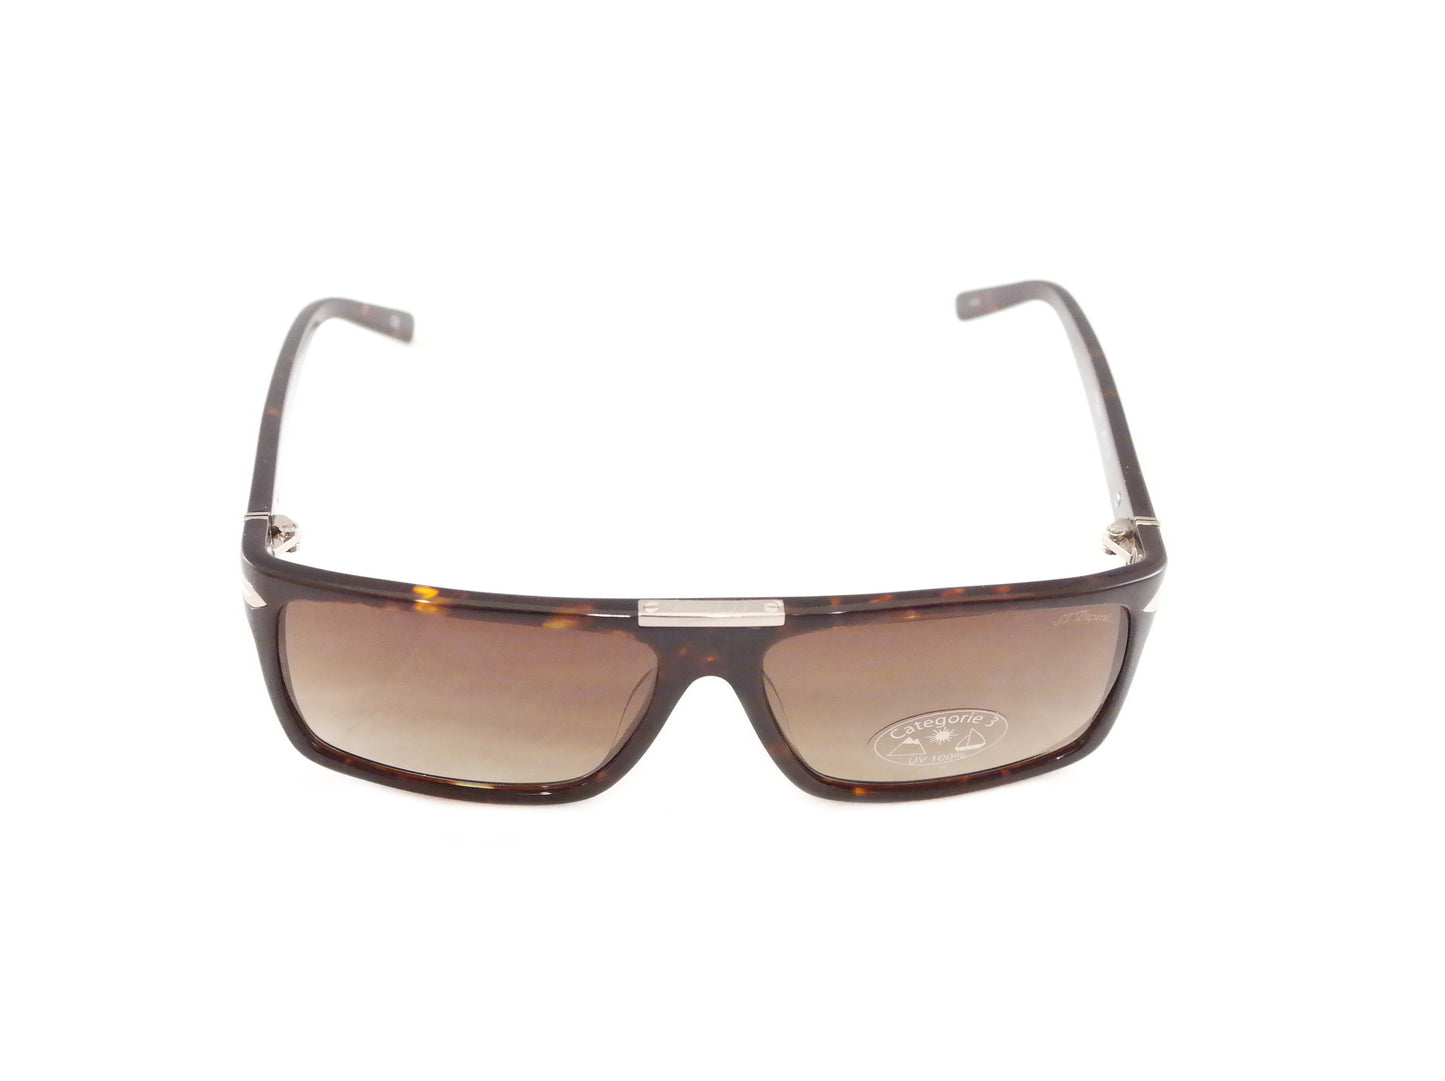 S. T. Dupont Sunglasses ST011 Polarized Plastic Italy 100% UV 3 Lenses 58-14-135 - Frame Bay